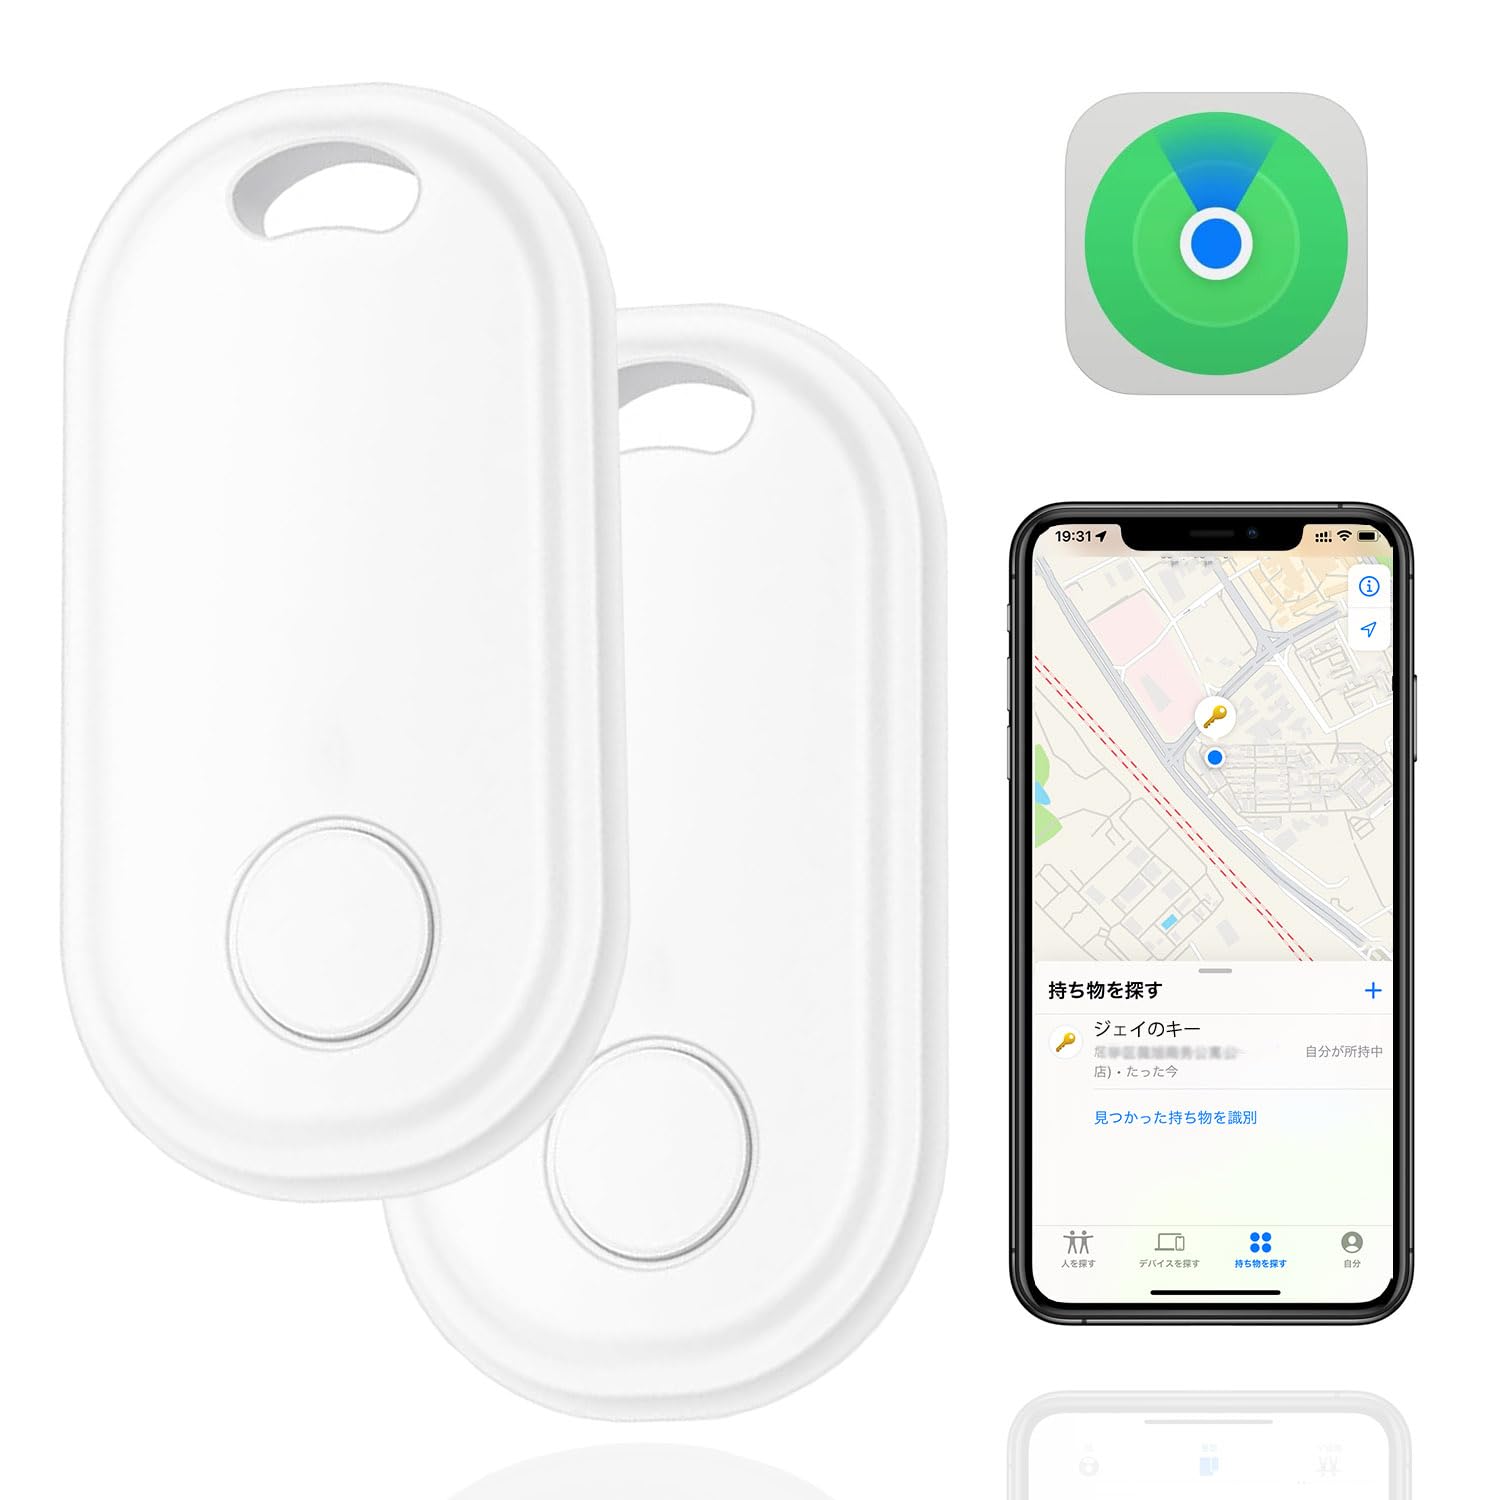 商品情報商品の説明主な仕様 ?【Appleの「探す」に対応】 スマートタグとは、カバン、鍵や財布、自転車やバイクなどに取り付けて、置き忘れを防止したり、なくしたときにその現在位置を調べられるBluetoothタグ/紛失防止タグです。 iPod/iPad/iPhoneの (探す) アプリを使ってスマートタグの現在位置を確認することができます。 Bluetooth電波の届く範囲(約10m)を離れても、iPhoneユーザーのネットワーク「“探す”ネットワーク」を利用して、世界中どこでも、遠く離れたスマートタグの追跡も可能です。 このため盗難されたものを追跡したり、周囲にiPhoneユーザーが多い市街地のような環境であれば、お子様やお年寄り、ペットの見守り・位置確認、スーツケースや宅配便などの配送荷物の追跡にも使えます。※「探す」機能はApple端末のみ対応。br?【音を鳴らして場所をお知らせ】このキーファインダーは大範囲をサポートする無線周波数が強く、壁、床、クッション、革製品などを通回すことができます。30メートル以内に忘れ物・落し物があれば、最大80dBの「ピーピー」音を鳴らして探せますので、探す手間が格段に減りました。お財布が見つからない？ スマートタグが付いていれば大丈夫。「探す」アプリの新しい「持ち物を探す」タブで、スマートタグの内蔵スピーカーに音を鳴らさせましょう。ソファの下や隣の部屋など近くにあれば、音が鳴る方を探すだけで見つけられます。br?【精確の測位＆範囲無制限】紛失防止タグはGPS測位技術を利用し、正確な測位とリアルタイムでの更新を実現して、また範囲無制限、世界中探し出せます。iPhoneの「探す」アプリからスマートタグの場所をマップ上で確認できるほか、スマートタグまでの距離や方向を表示して持ち物を探すことができます。また、持ち物を落としたり置き忘れた場合などにはスマートタグを"紛失モード"にすることで、持ち物を見つけてくれた人に連絡先を残すことができます。「探す」ネットワーク上にある数億台のApple製デバイスのサポートで見つける「探す」、ネットワークとのすべての通信は匿名で行われ、情報を暗号化してプライバシーを保護、位置情報や履歴がgpsタグに保存されることは決してありません。br?【スタンバイ能力抜群＆多用途】スマートトラッカーはバッテリーを内蔵しており、充電せずに利用することができます。バッテリーを一回に変われば、最大12ヶ月に使えます。電力不足を心配しなくて、ご安心に使用していただけます。鍵、カバンに掛けて、あるいは固定用粘着シールでリモコン、財布、メガネ、スマホに付けてもいいです。簡単な操作で小さい子供にもご年配の方にも誰でも使用できます。なくしもの発見器として使うことだけでなく、高齢者介護向けに呼び出しベルとしては使え。迷子になりやすいお子さんに持たせたり、物忘れしやすい方や認知症のある年配の方には大活躍！br?【技術基準適合証明】本製品は日本での技術基準適合証明（技適）を取得しています。技適証明取得をしている製品のご購入、ご使用を推奨いたします。12ヶ月間の安心保証付いていますので、万が一商品不具合のようでしたら、いつでもお気軽にメールで連絡してください、 → 注文履歴 。